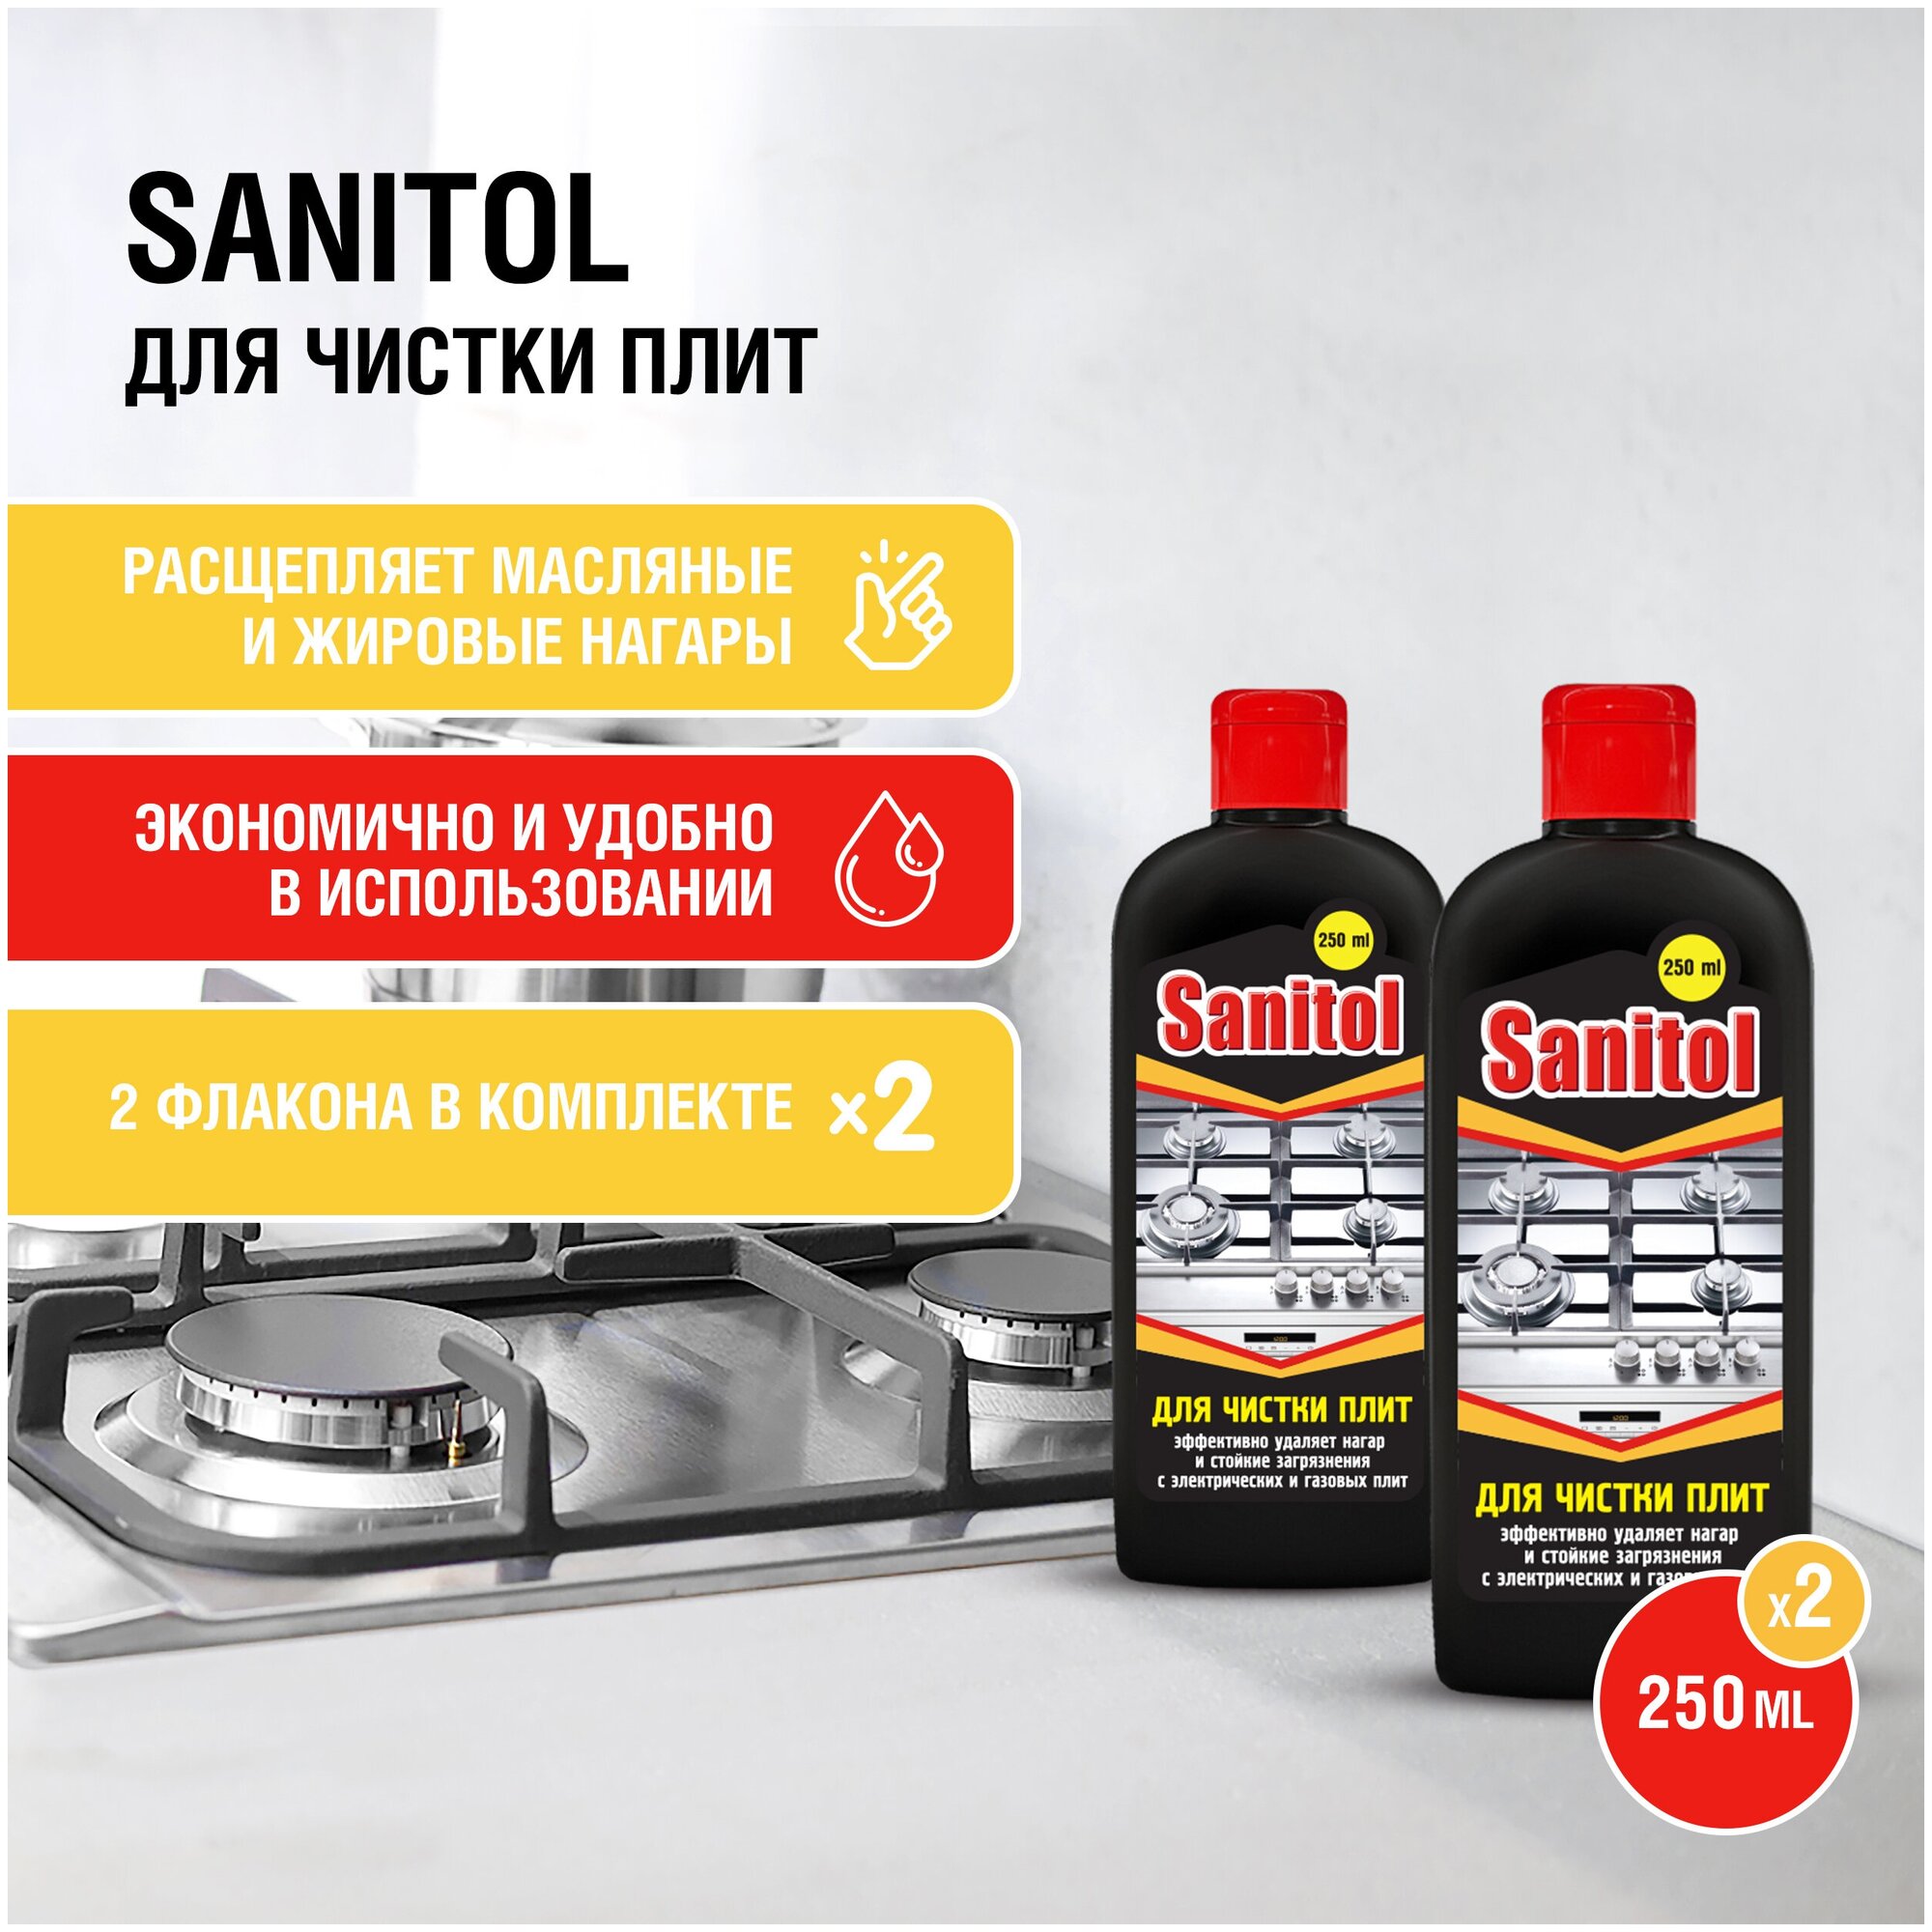 Sanitol / Средство для чистки плит, духовых шкафов, грилей, 2 ШТ. х 250 МЛ. - фотография № 1